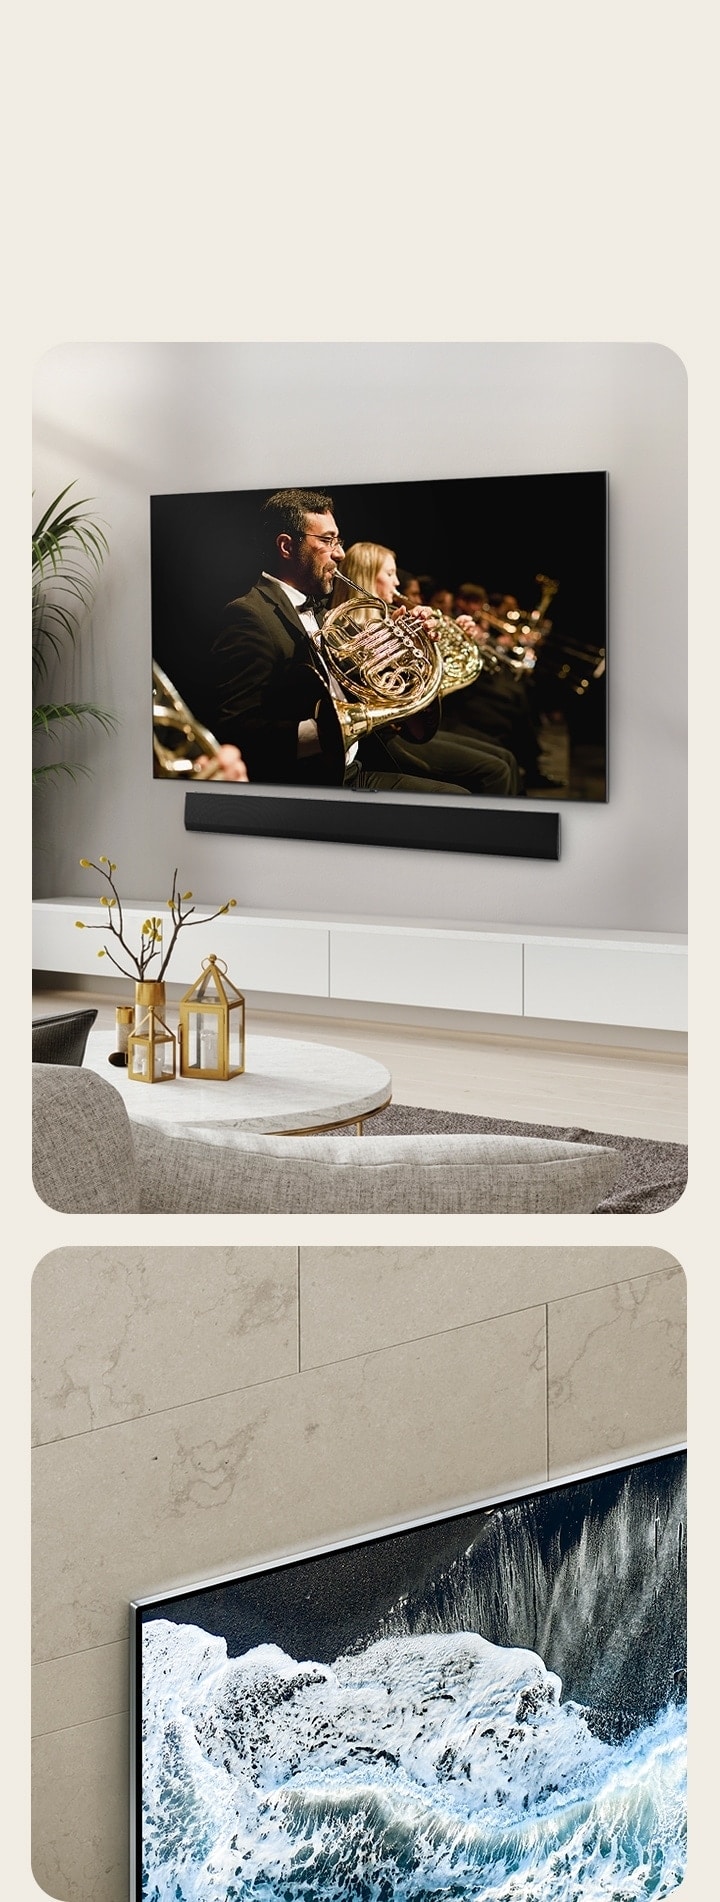 Der LG OLED evo TV G4 in einem perspektivischen Winkel vor einer marmorierten Wand, der zeigt, wie der Fernseher mit der Wand verschmilzt.   Der LG OLED evo TV G4 und eine LG Soundbar in einem minimalistischen Wohnraum flach an der Wand mit einer Orchesteraufführung auf dem Bildschirm. 